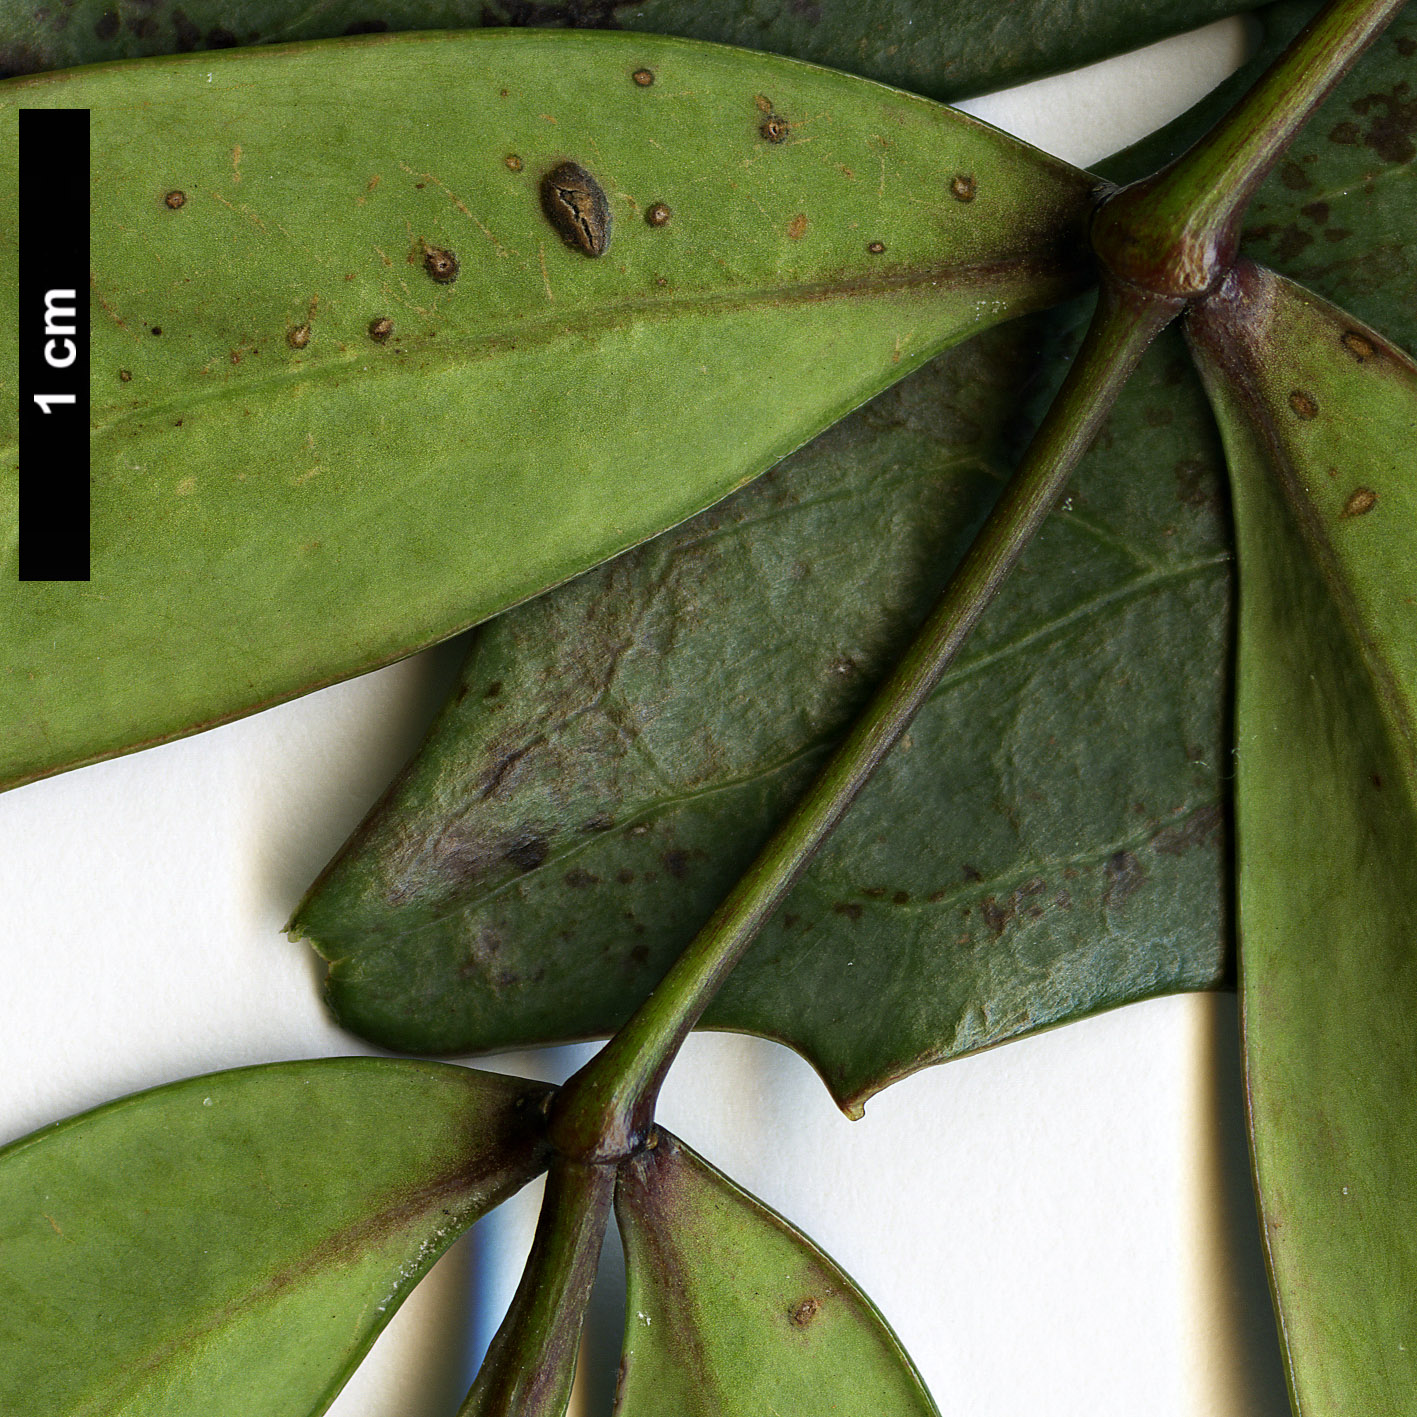 High resolution image: Family: Berberidaceae - Genus: Mahonia - Taxon: eurybracteata